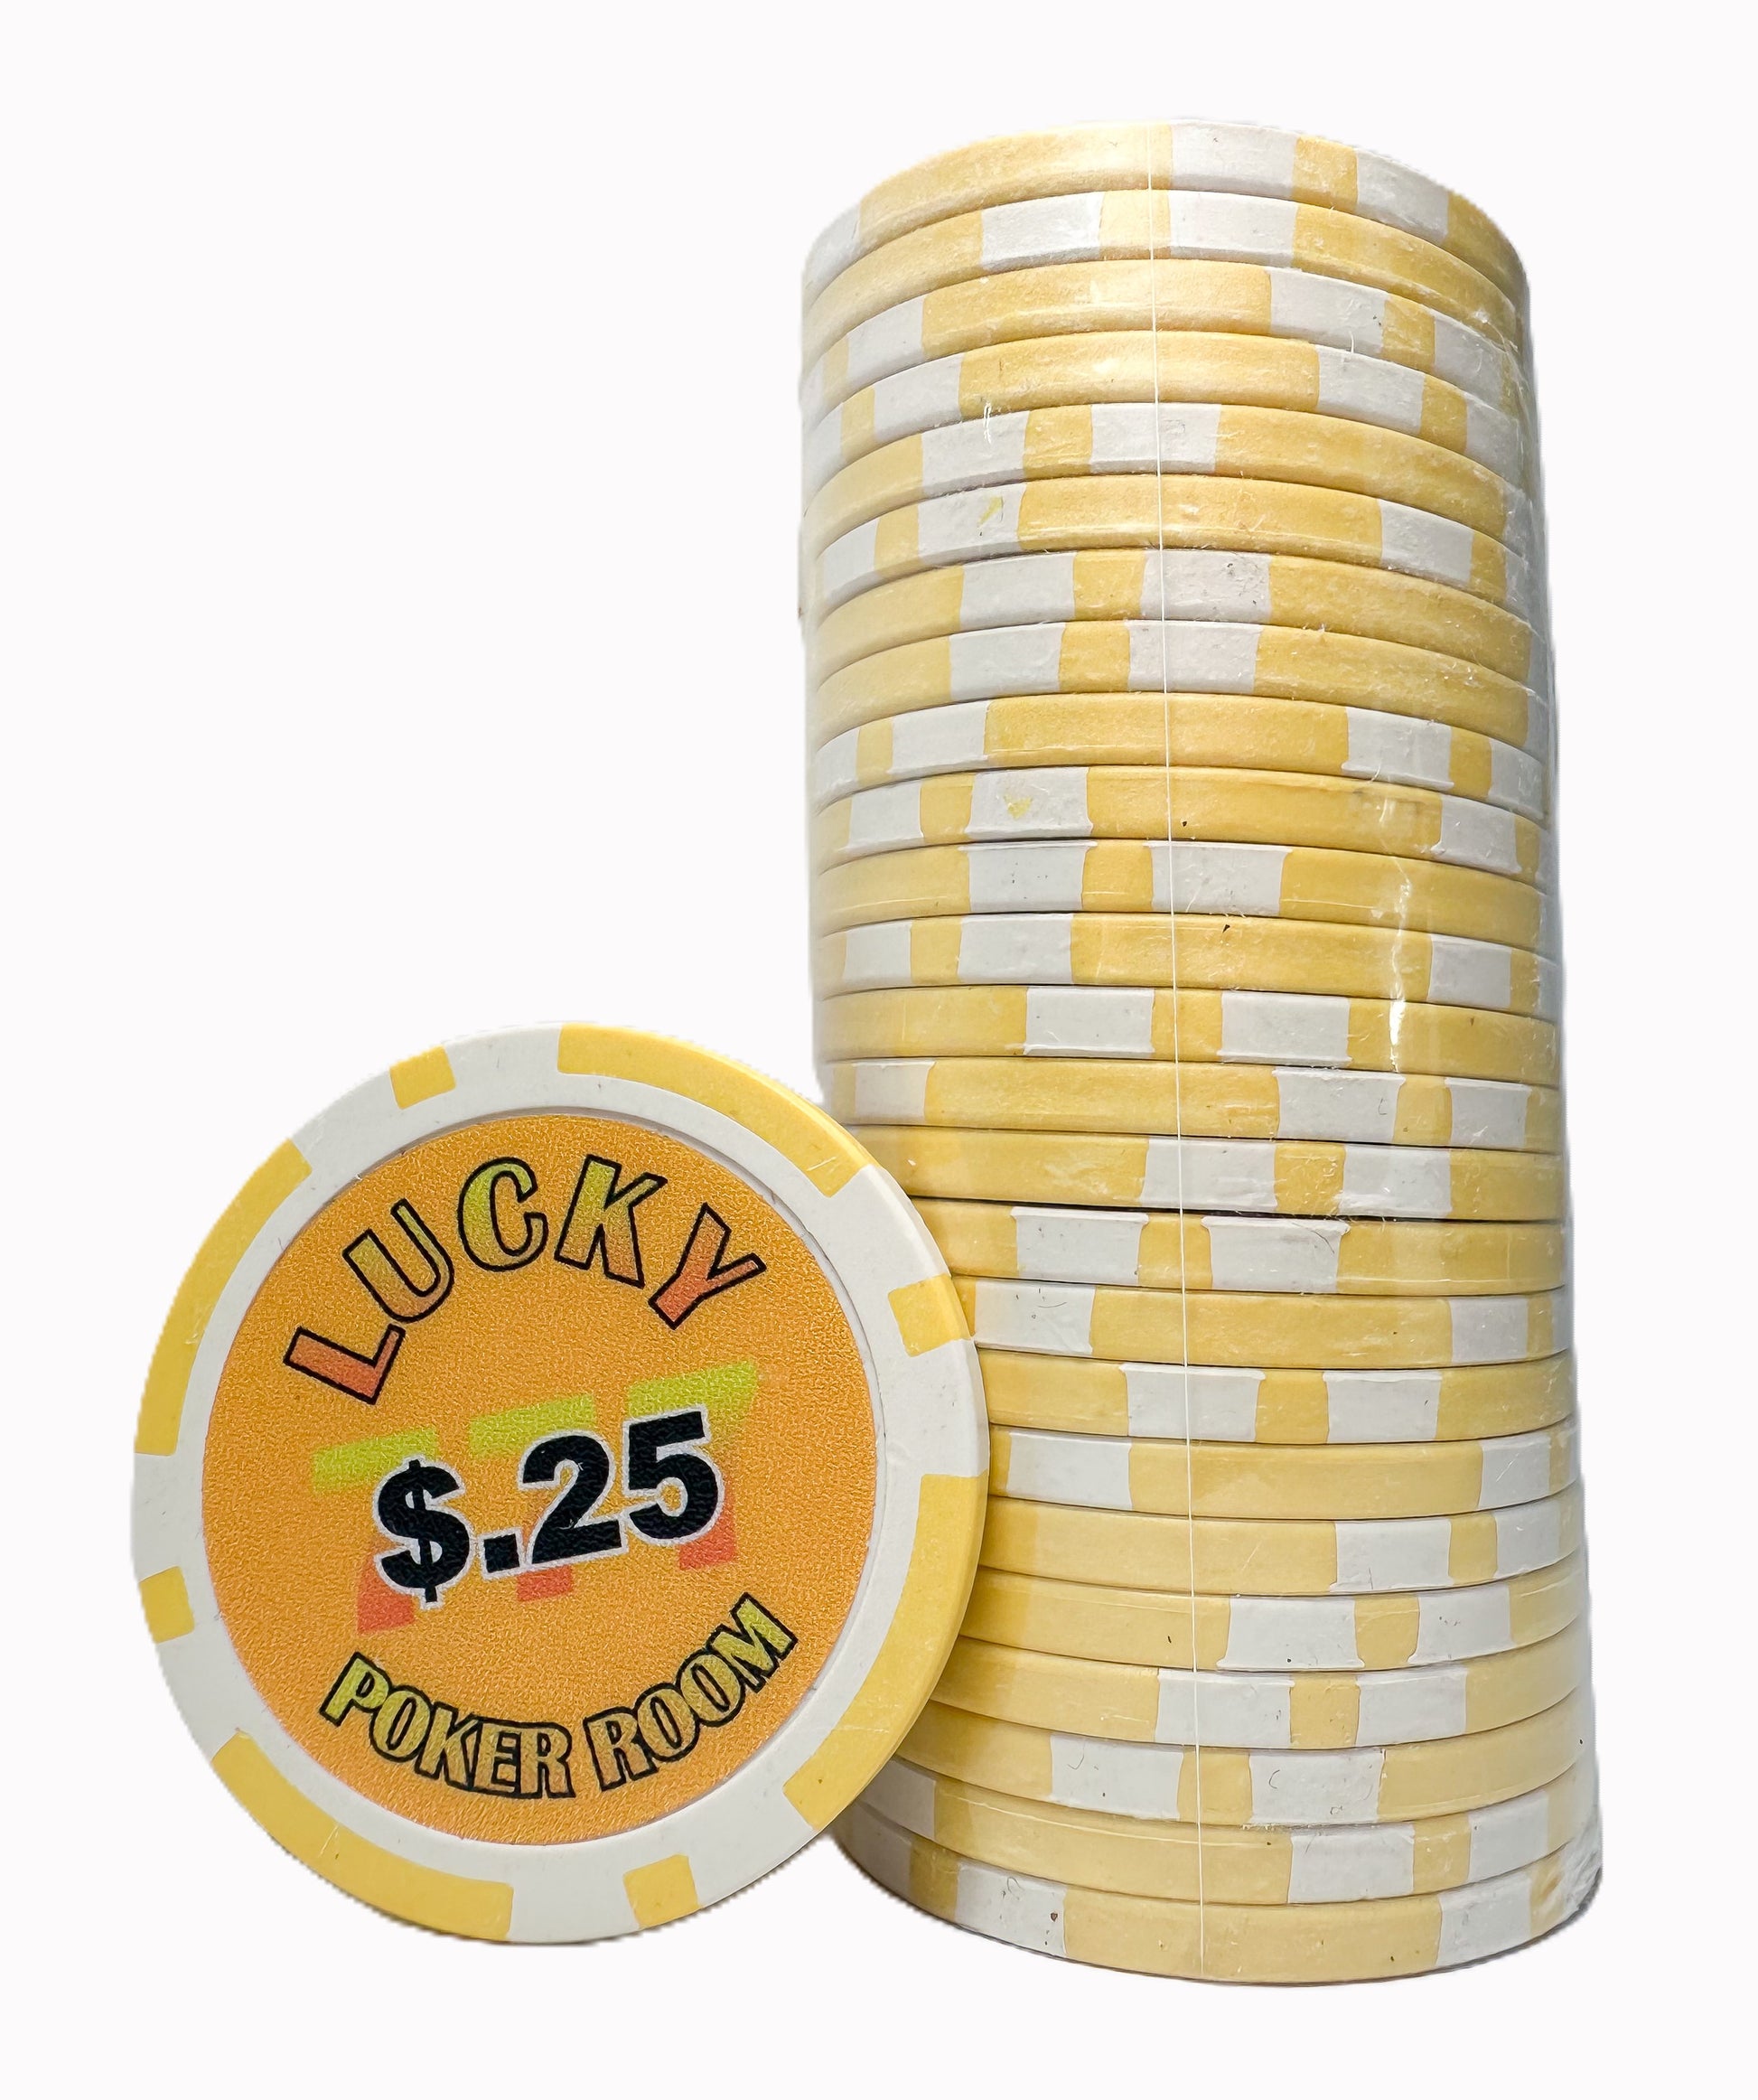 Lucky Poker Romm .25c chips